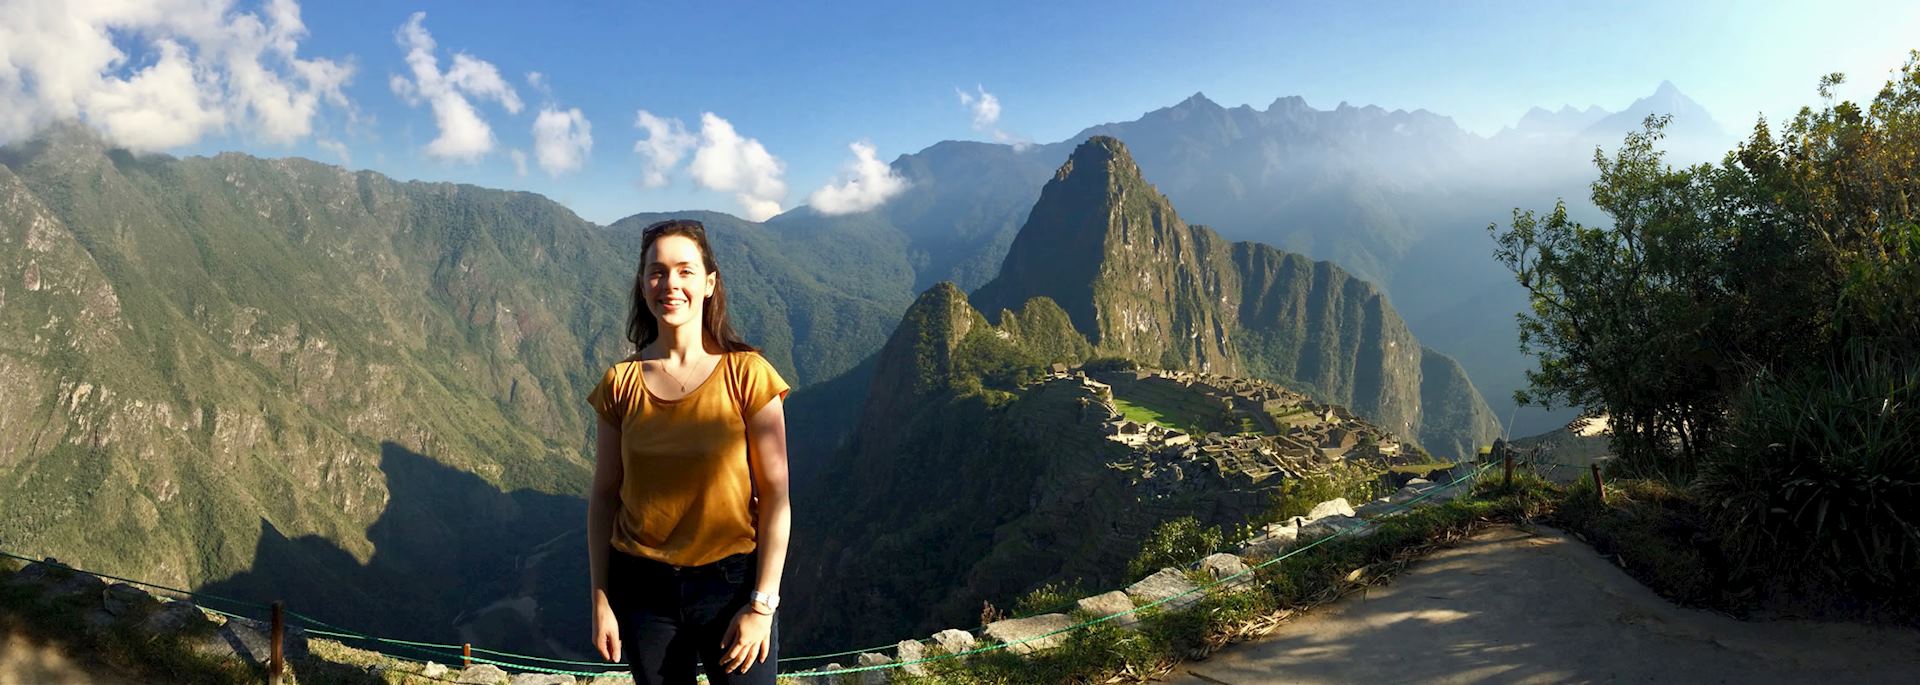 Catherine at Machu Picchu, Peru